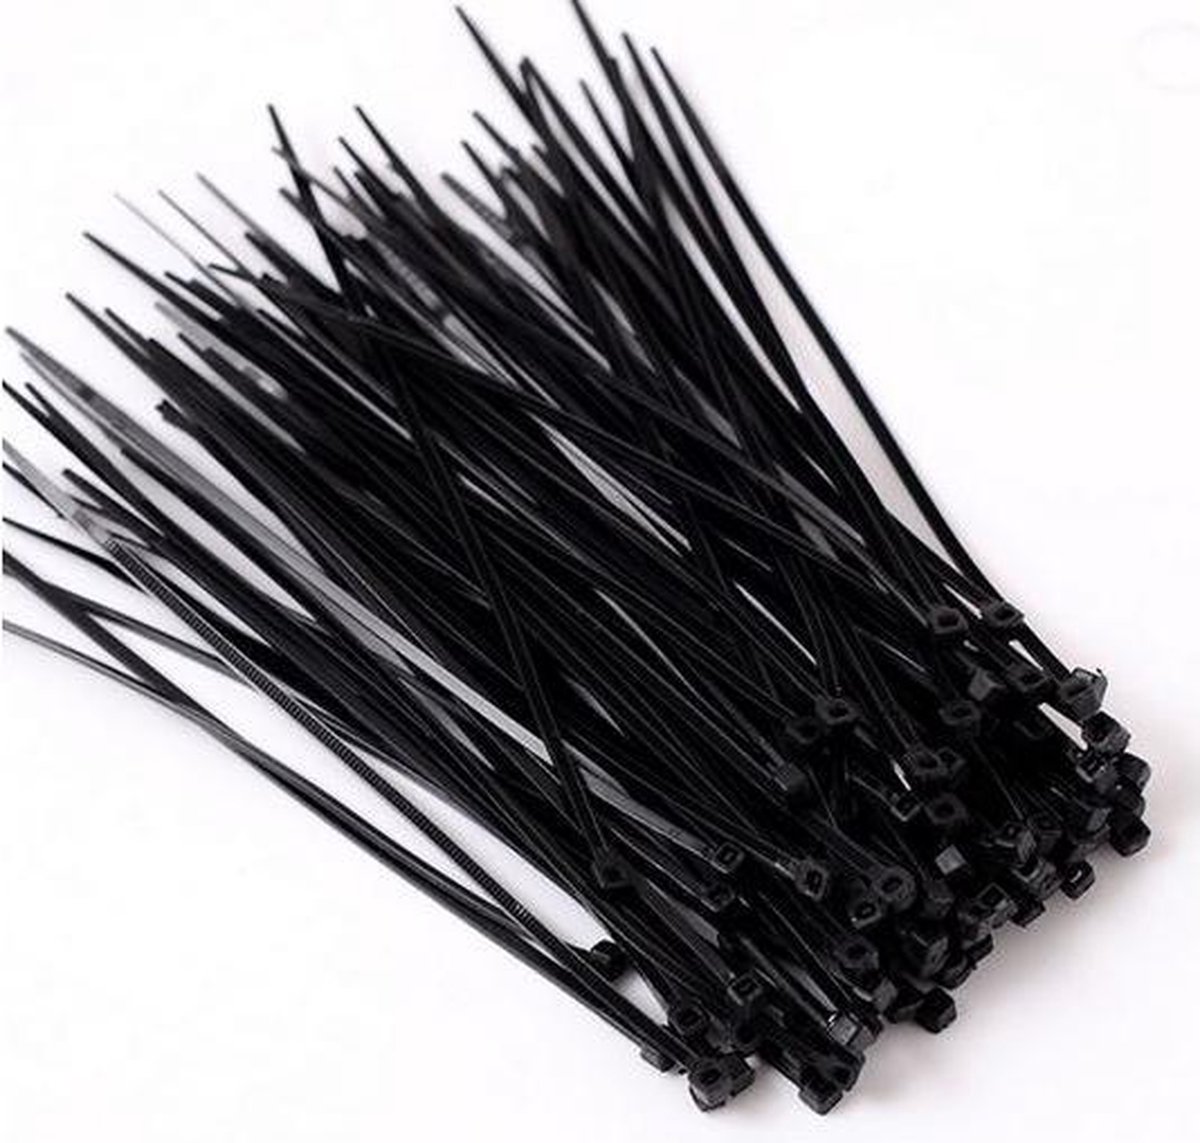 100 stuks kabelbinders zwart 2,5 x 200 mm